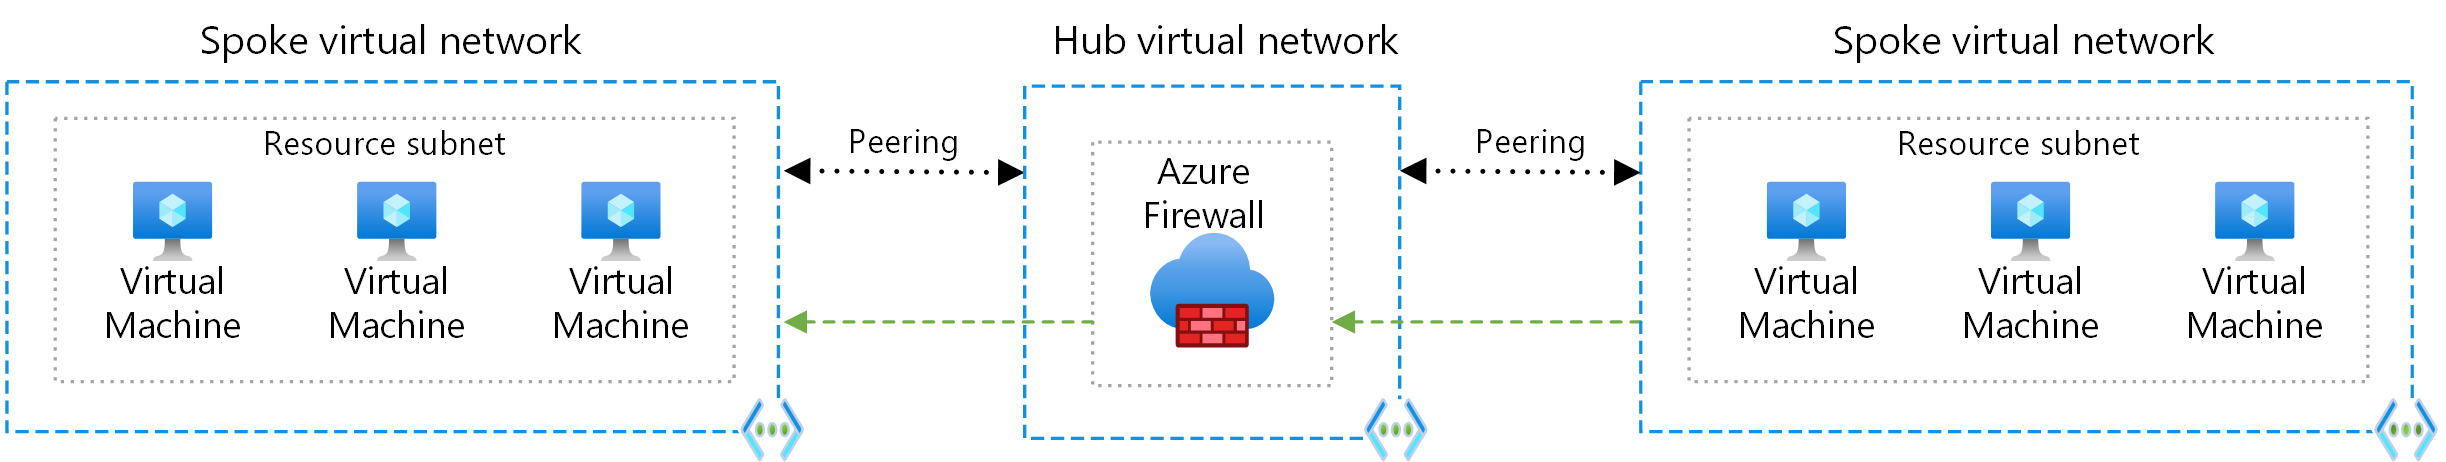 Diagram met routering tussen spokes met behulp van Azure Firewall